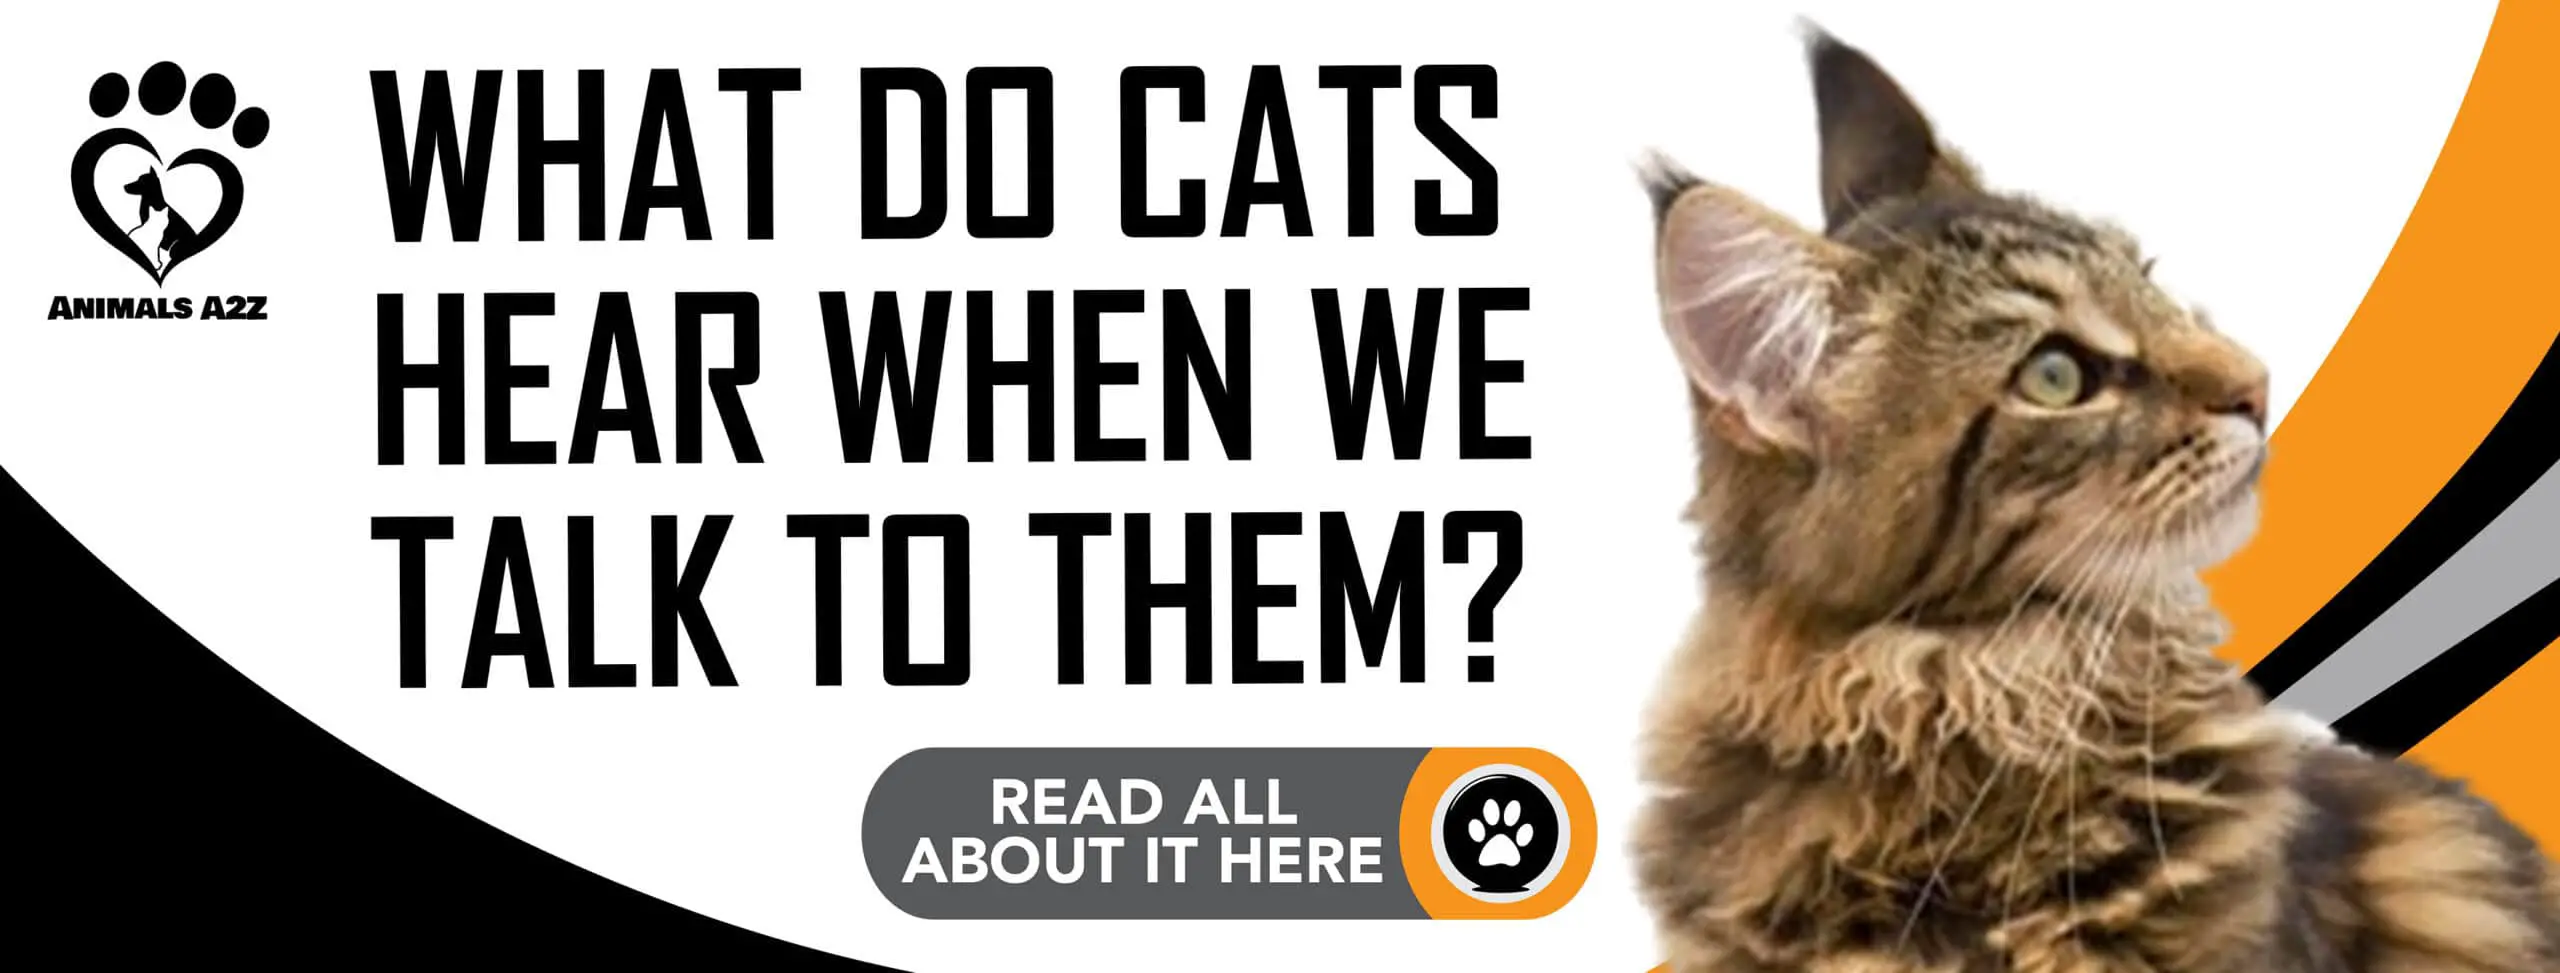 Qu'entendent les chats quand on leur parle ?